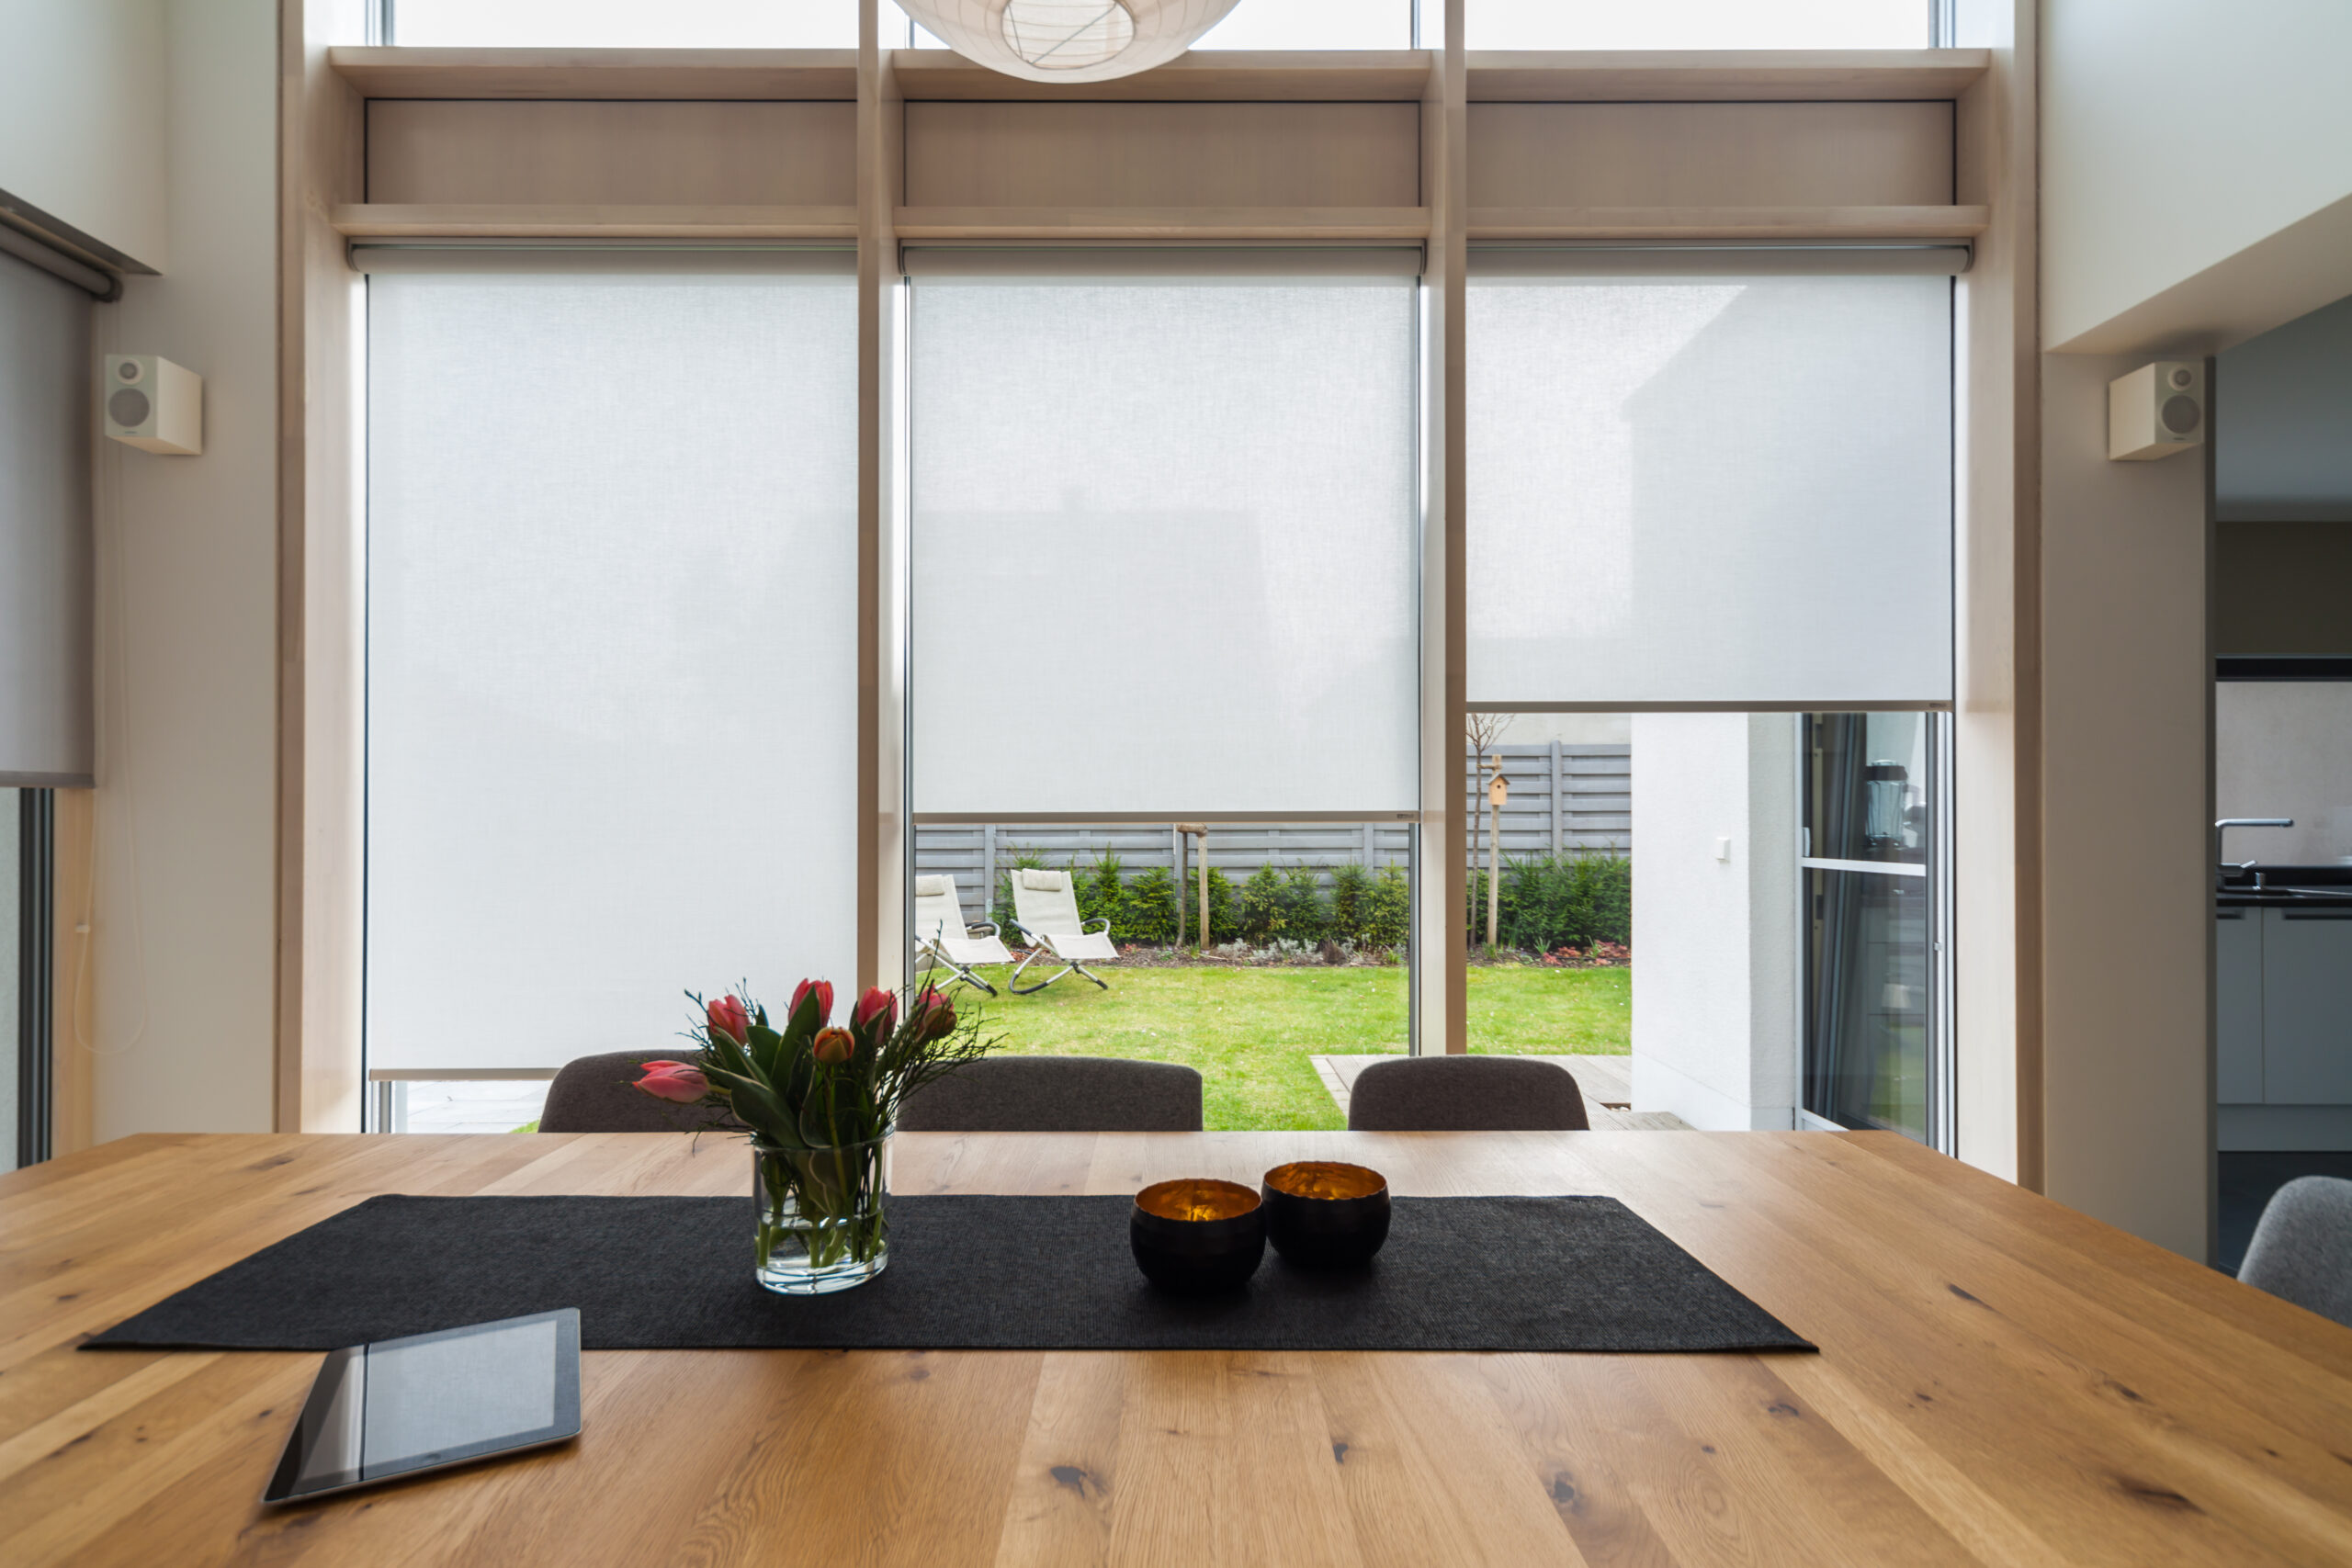 Modernes Esszimmer mit einem großen Tisch, zwei Schüsseln und einem Blumenstrauß und Blick auf einen Hinterhof durch raumhohe Fenster.